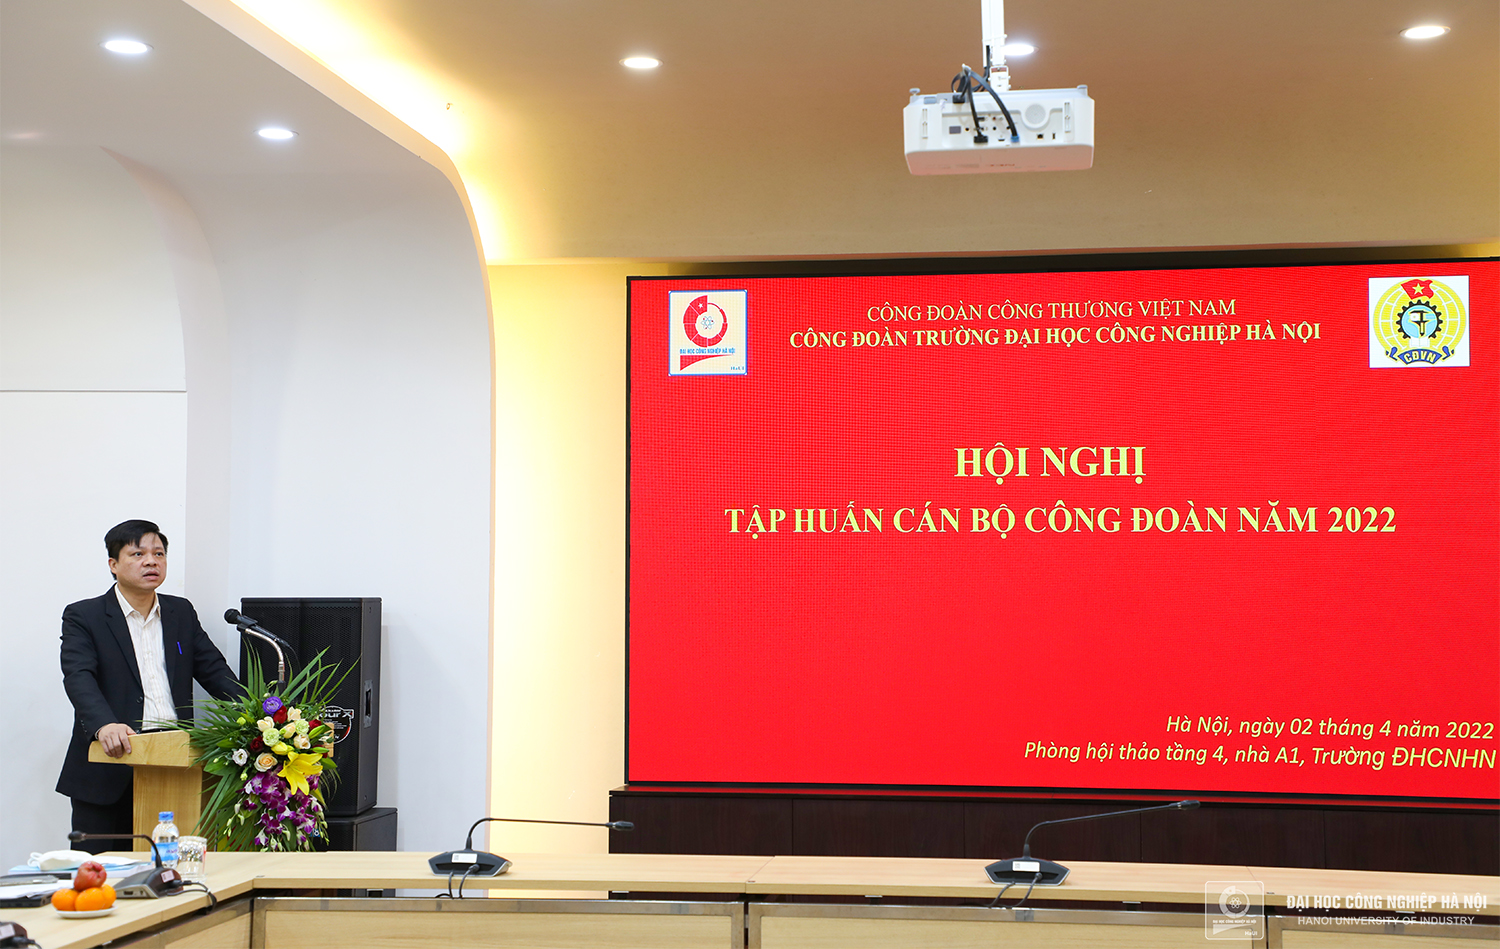 Đồng chí Phạm Văn Đông - Chủ tịch Công đoàn trường phát biểu tại Hội nghị tập huấn Công đoàn năm 2022